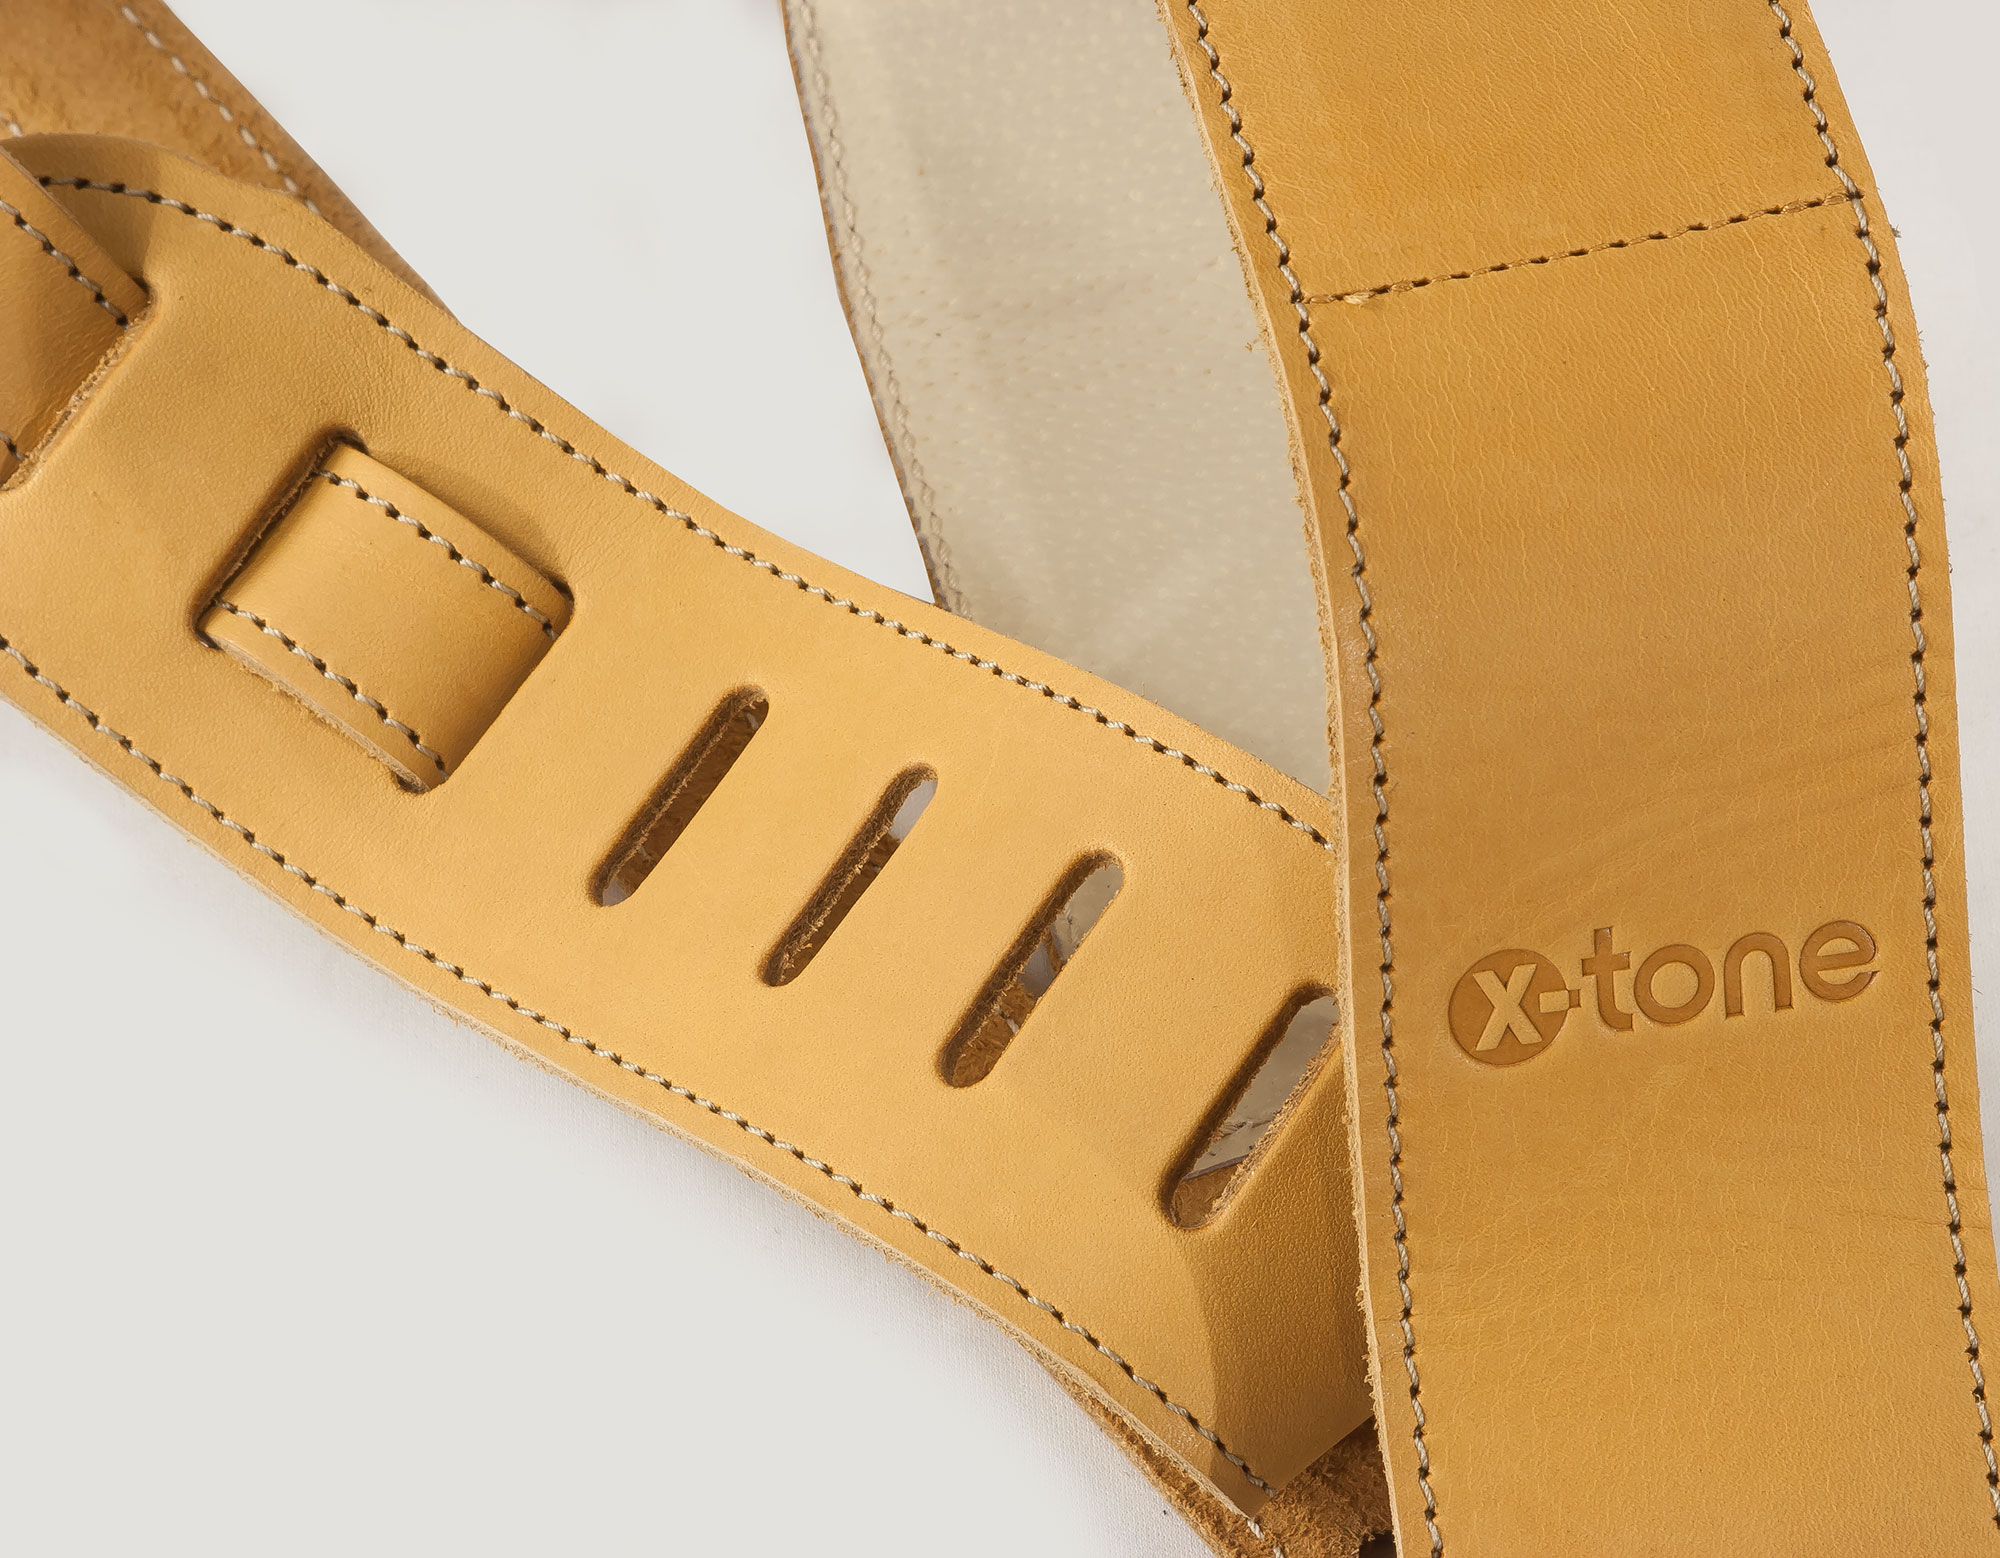 X-tone Xg 3154 Classic Plus Leather Guitar Strap Cuir RembourrÉe Brownstone Beige - Guitar strap - Variation 1